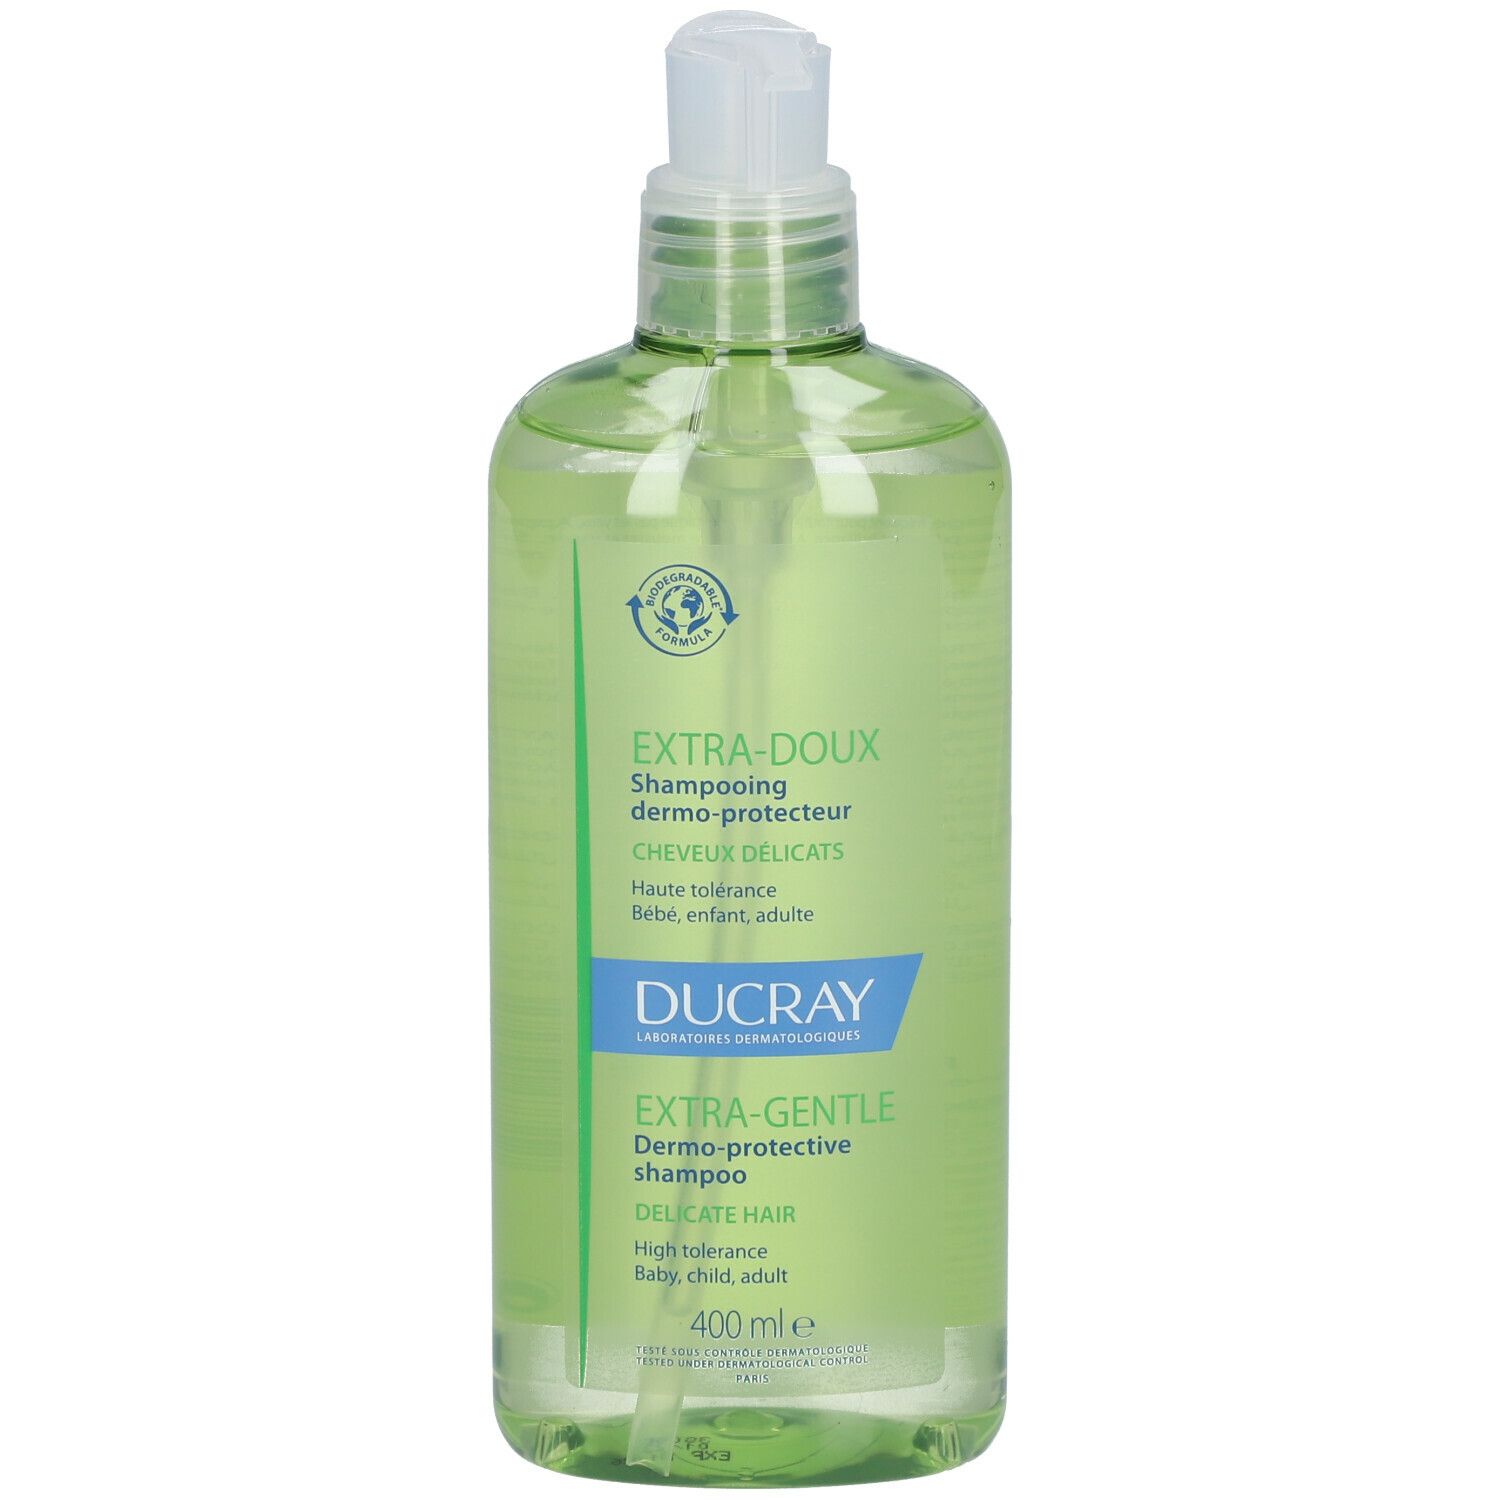 Ducray Extra-Doux Shampooing dermo-protecteur